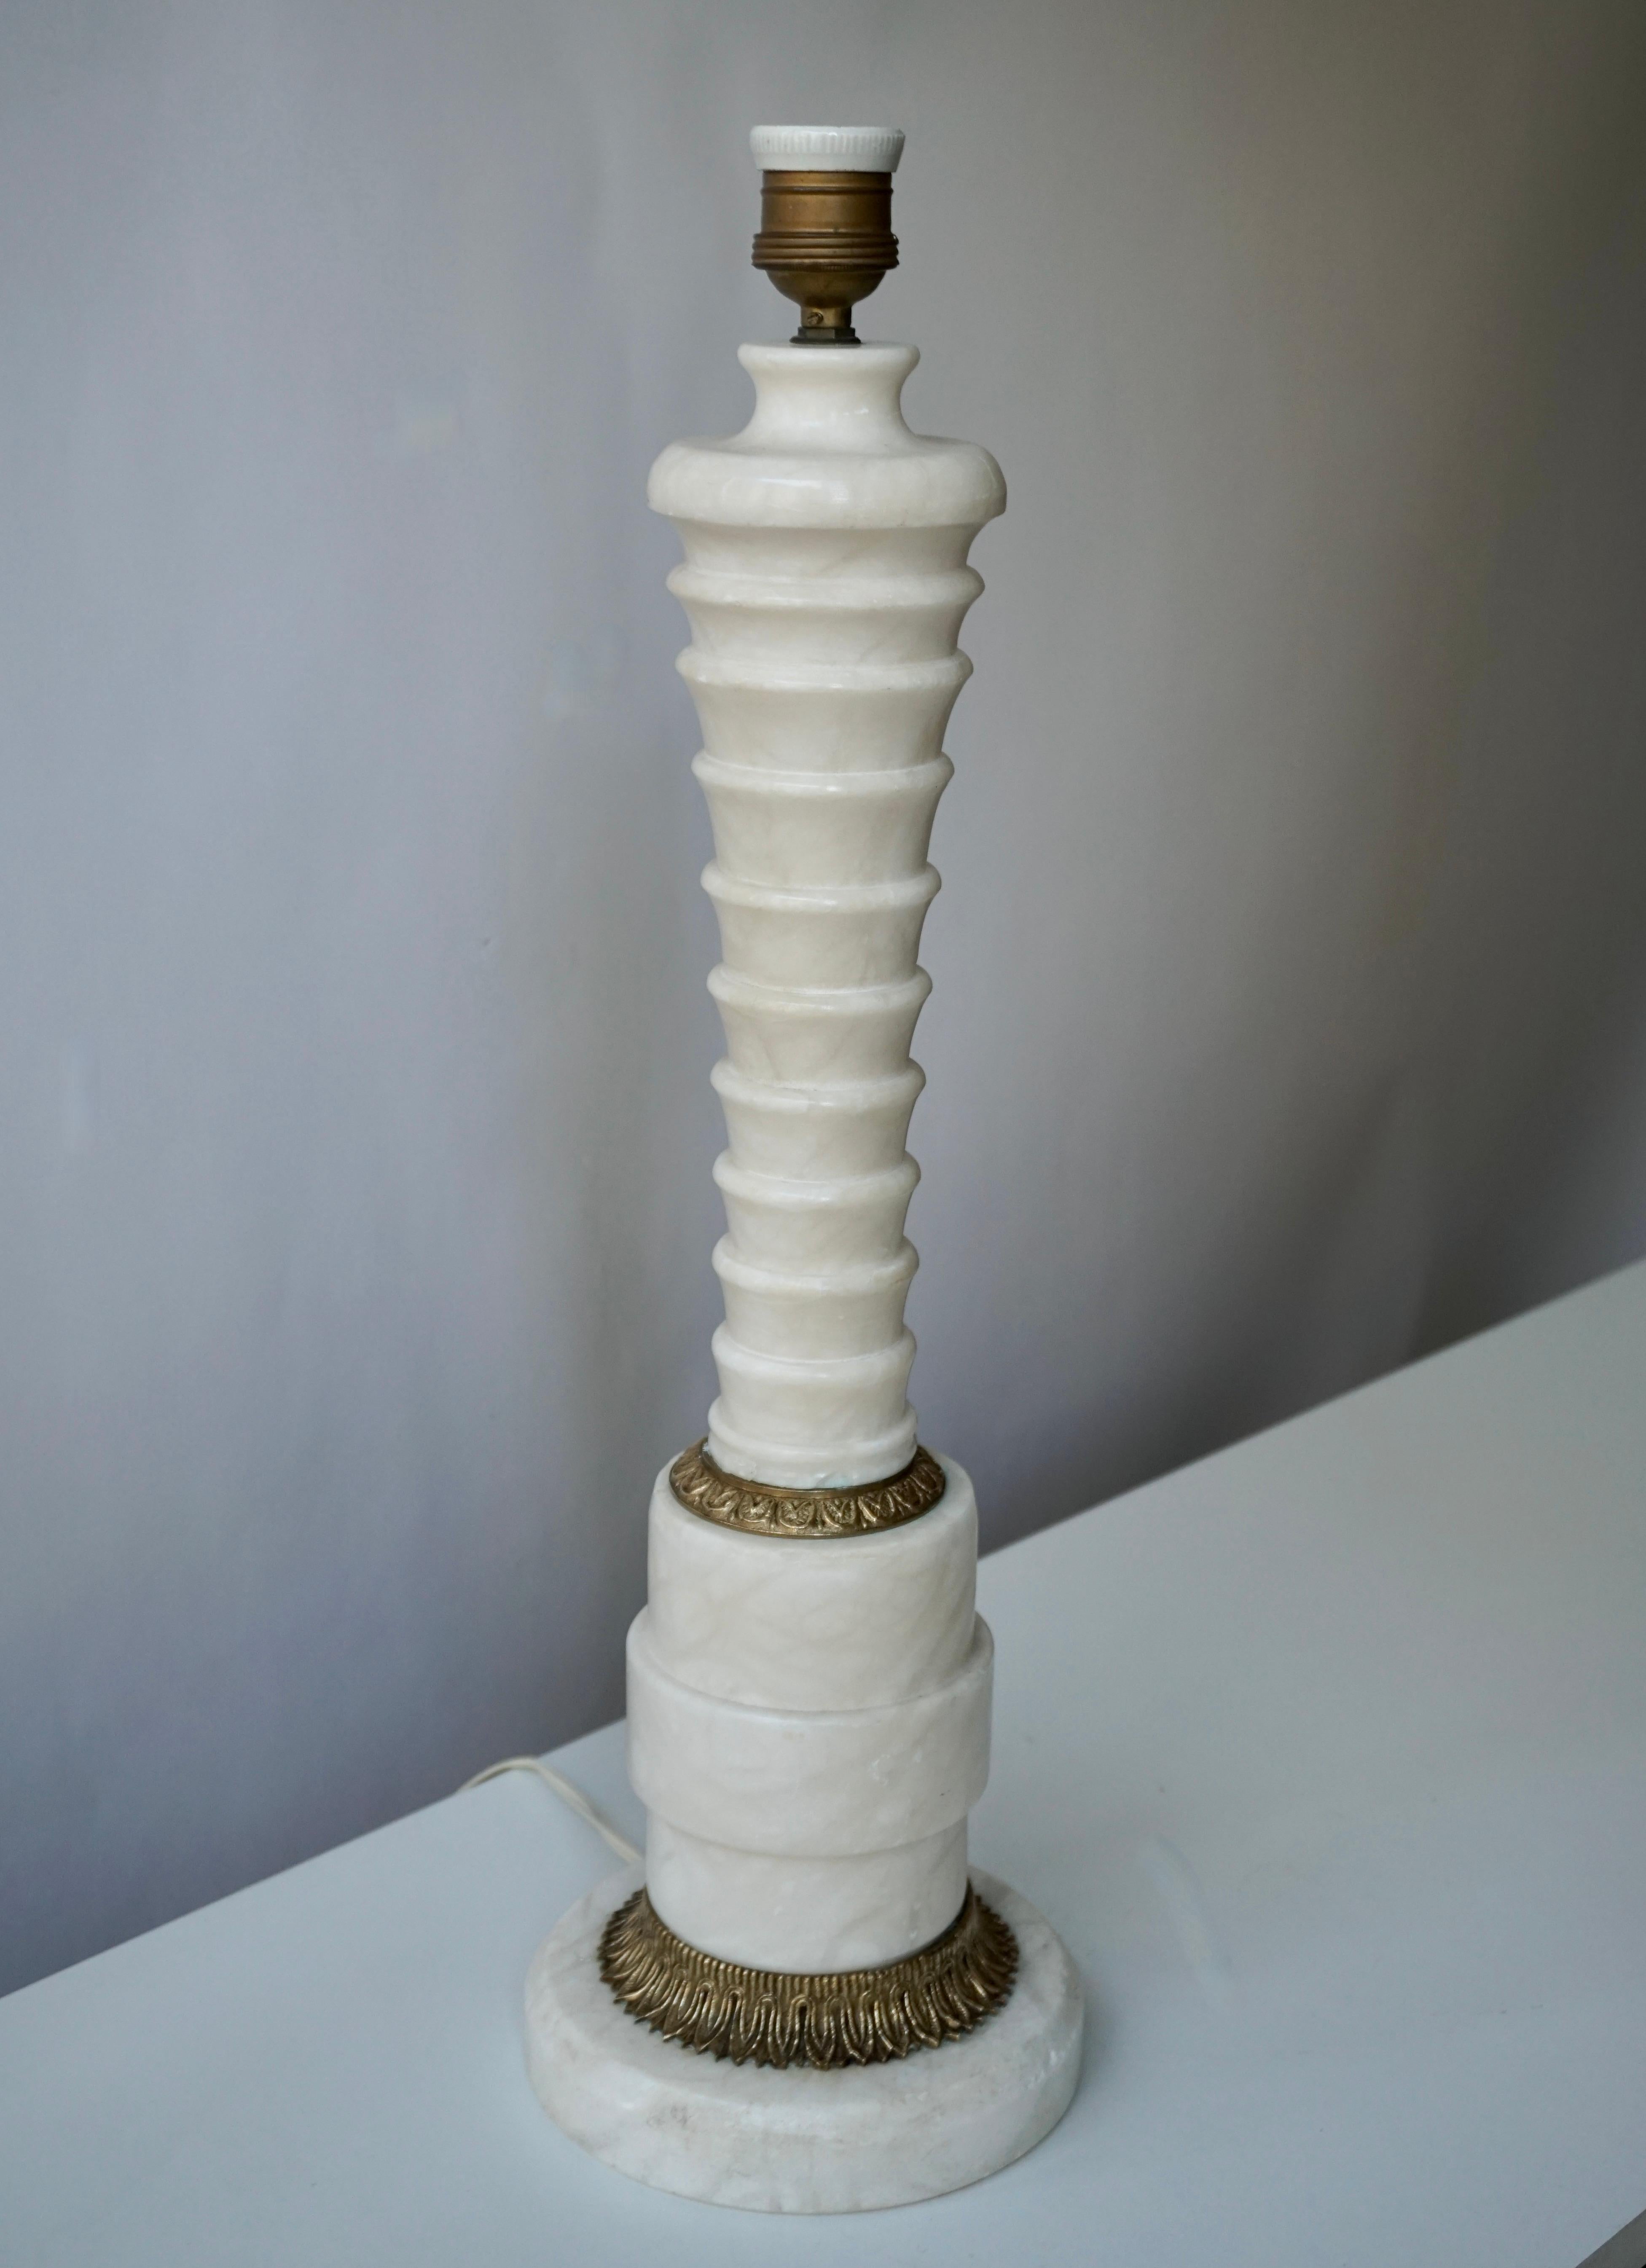 Lampe de table italienne en laiton et marbre.

Mesures : Diamètre 16 cm.
Hauteur 54 cm.
Poids 7 kg.